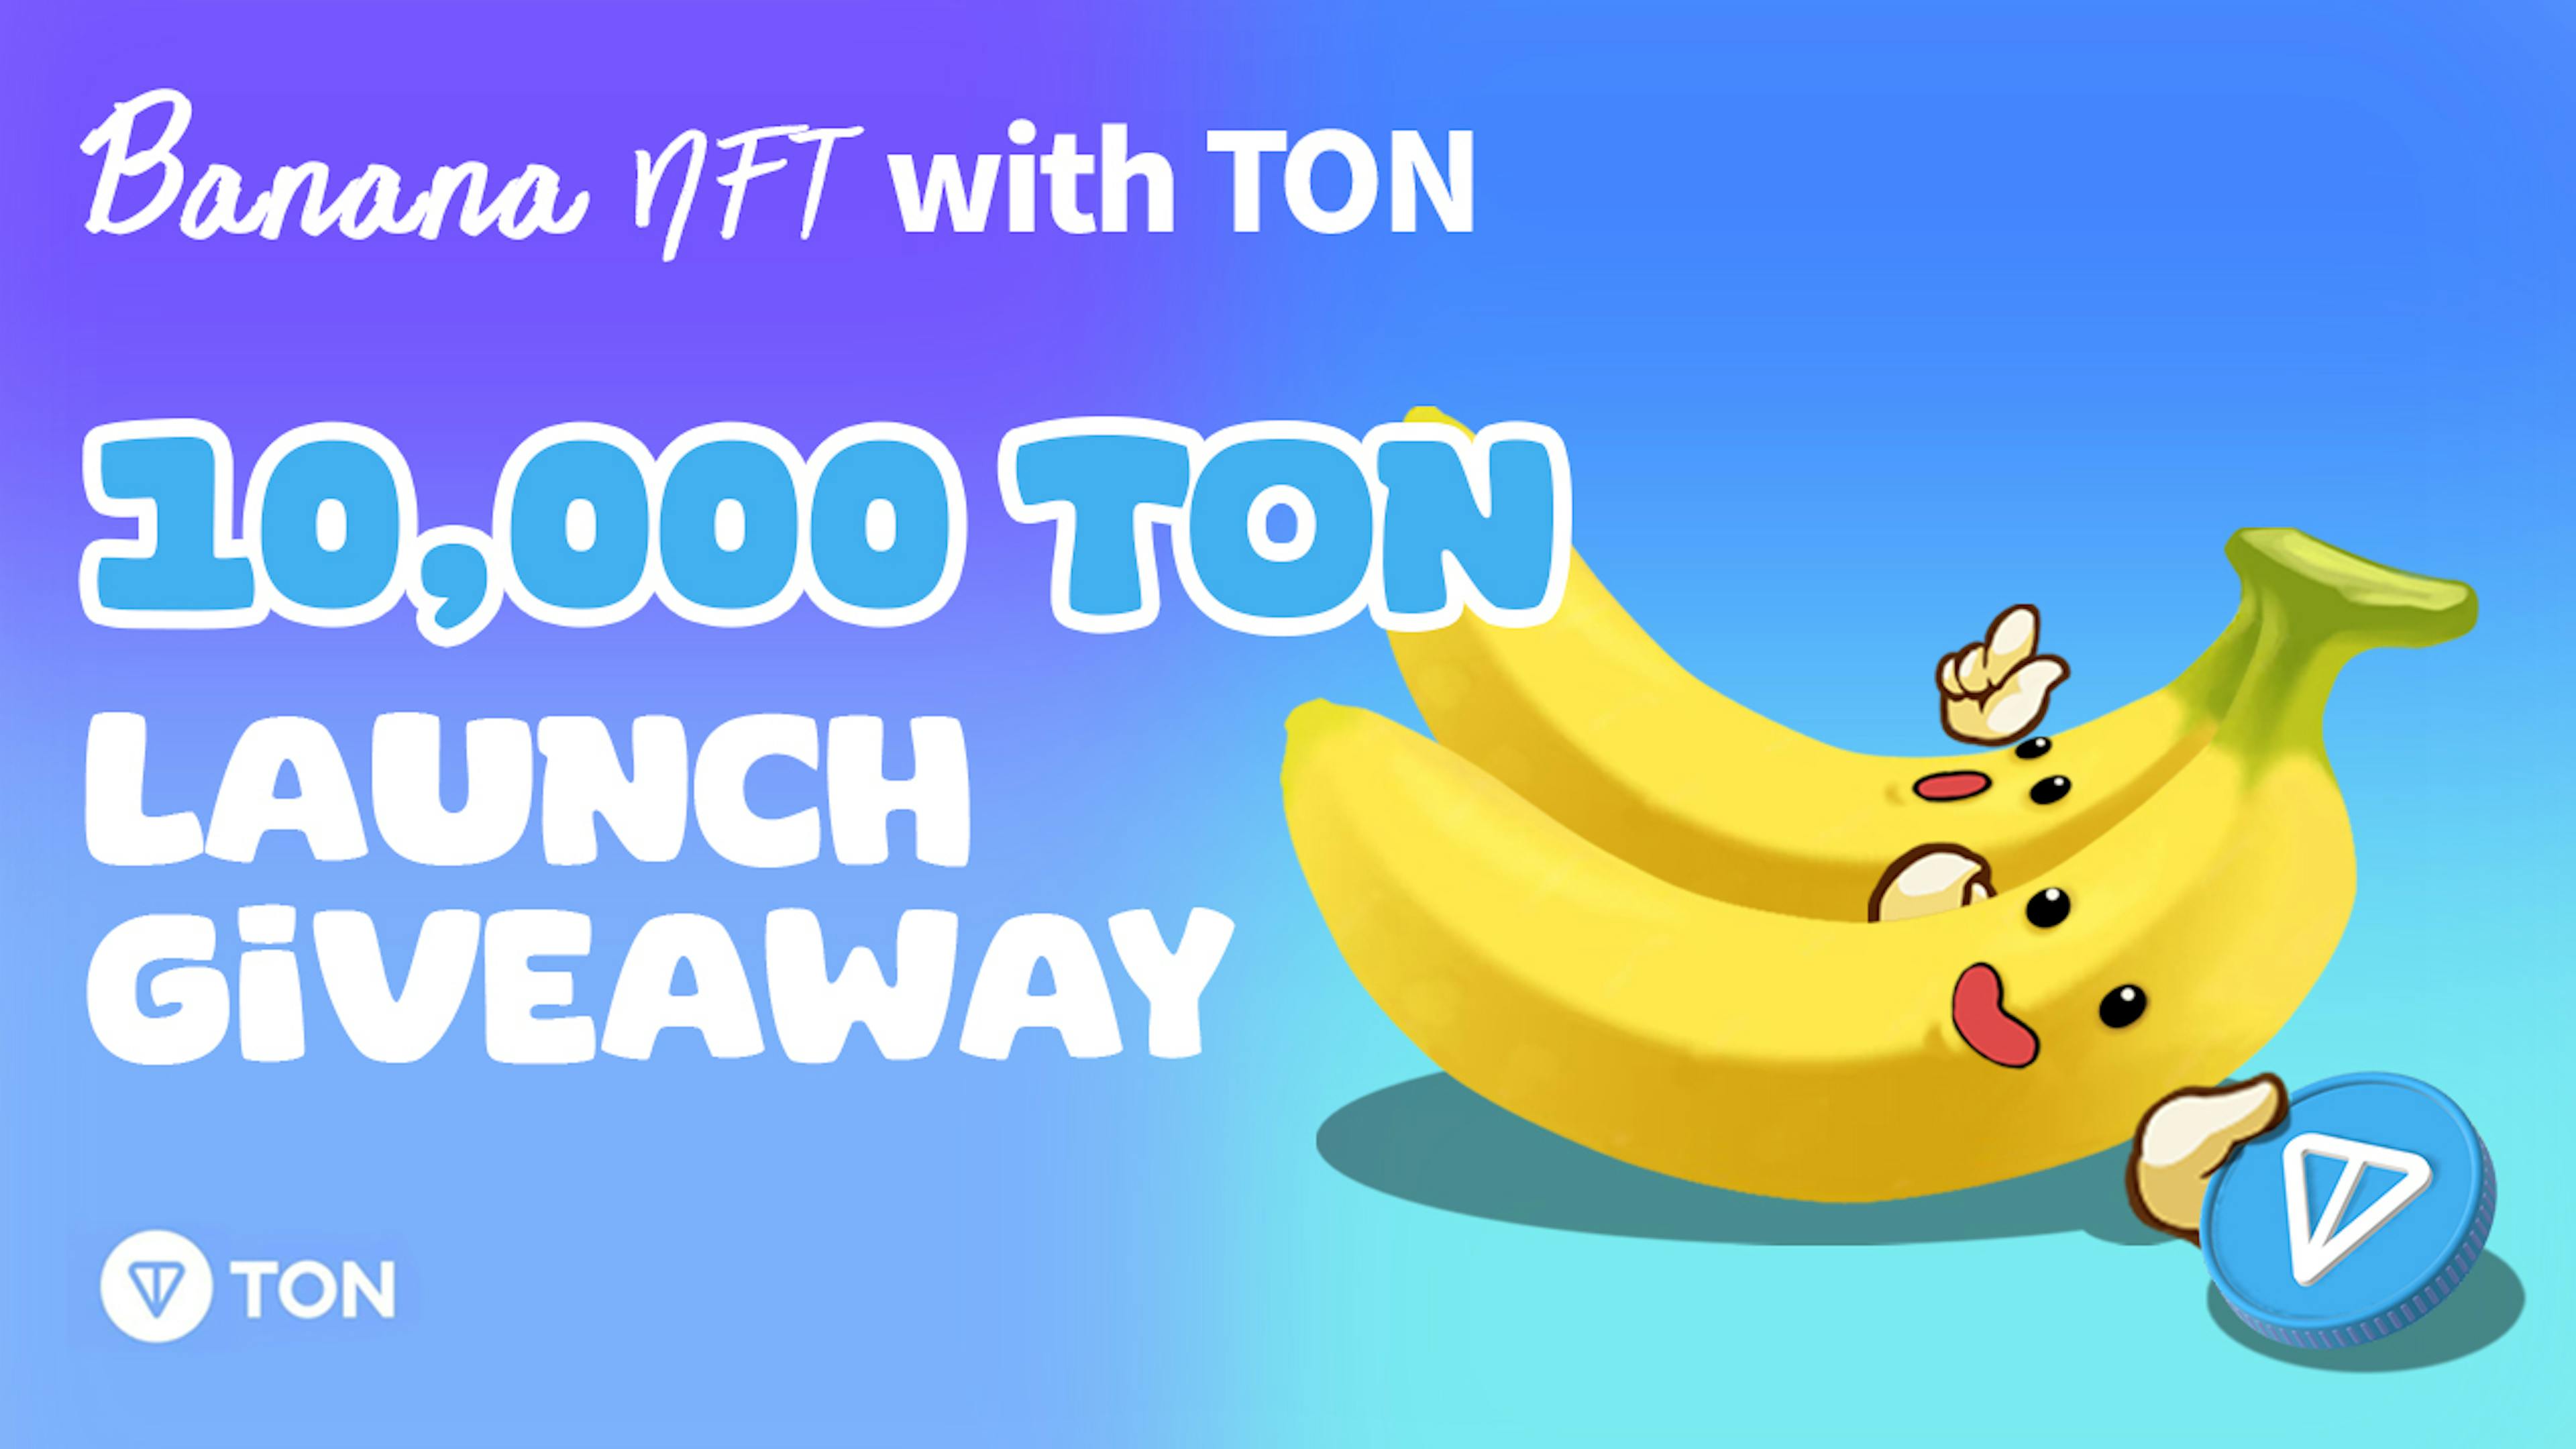 featured image - Banana NFT startet auf Telegram mit einem Giveaway-Event im Wert von 10.000 TON-Dollar